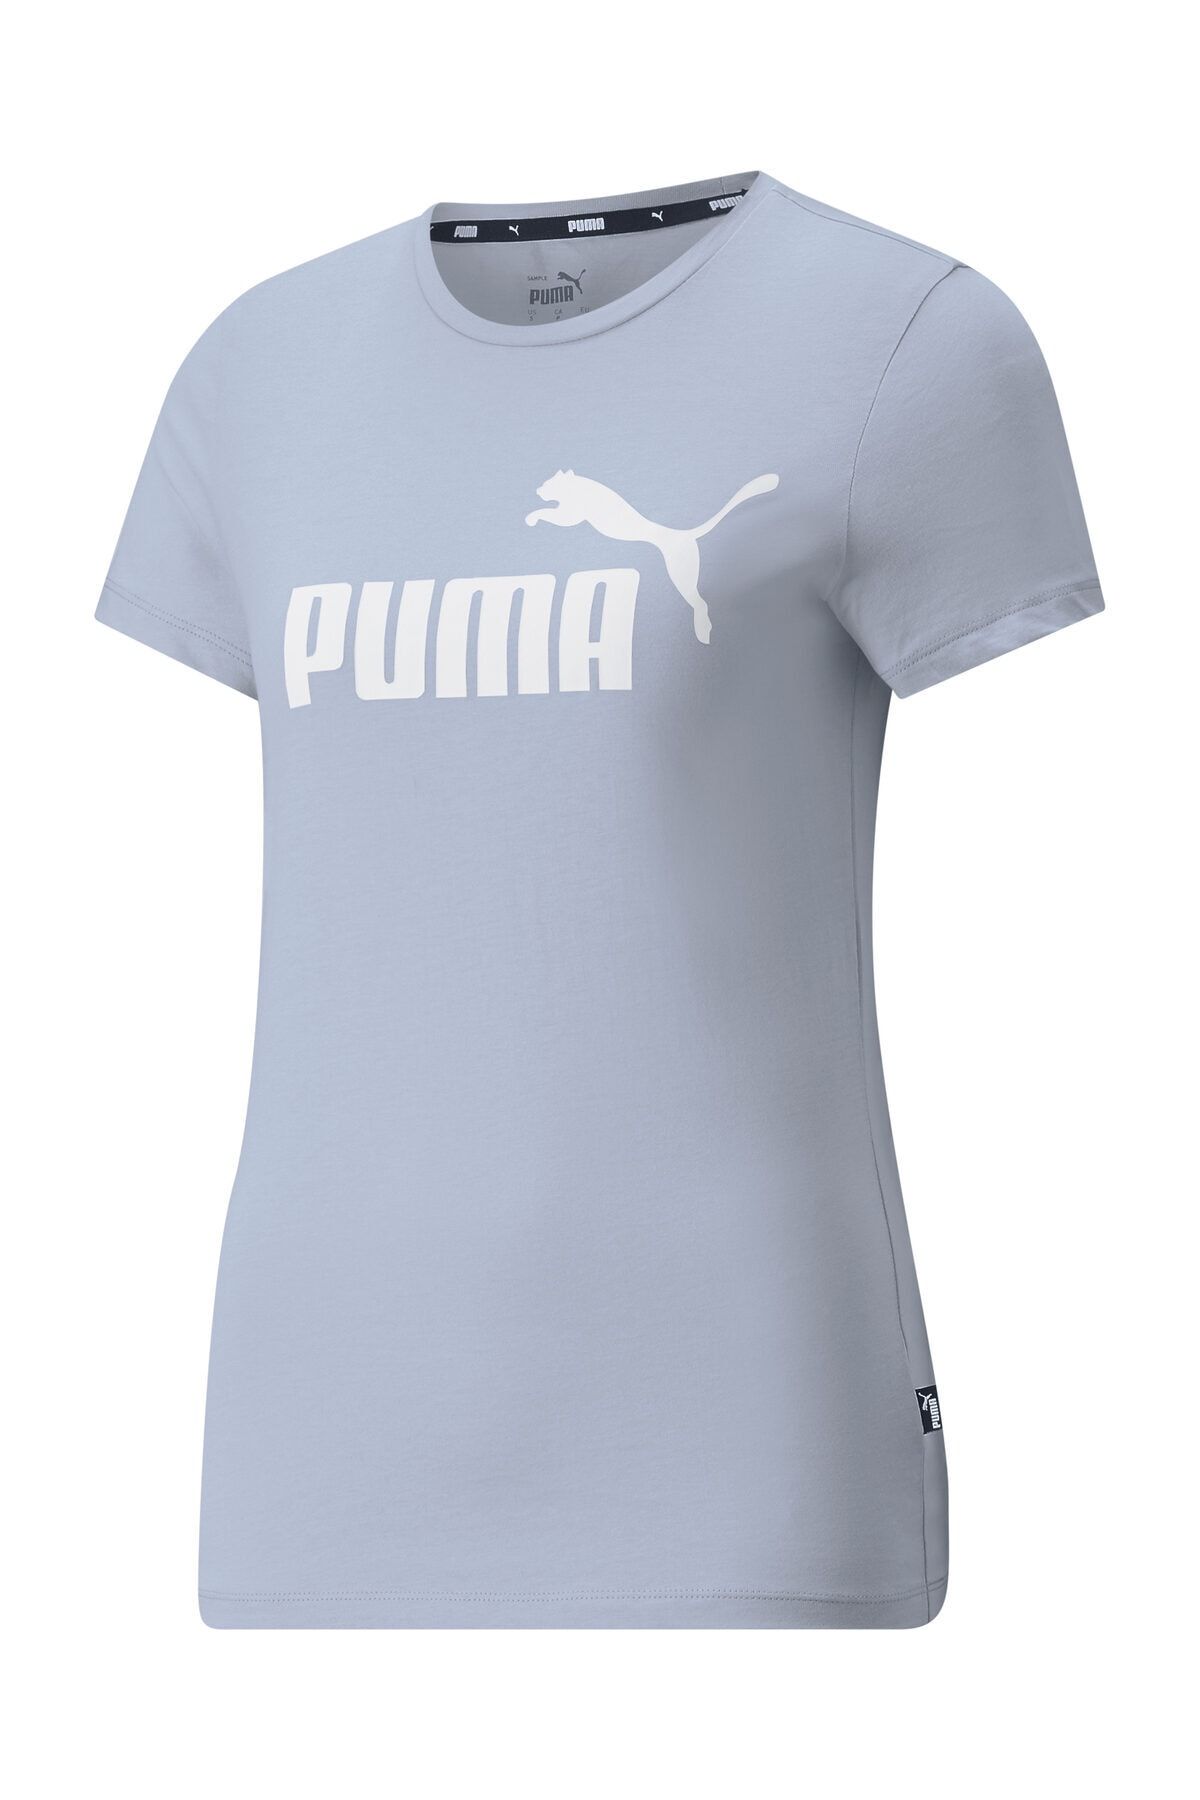 Puma Kadın Tişort Ess Logo - Mavi - 58677583